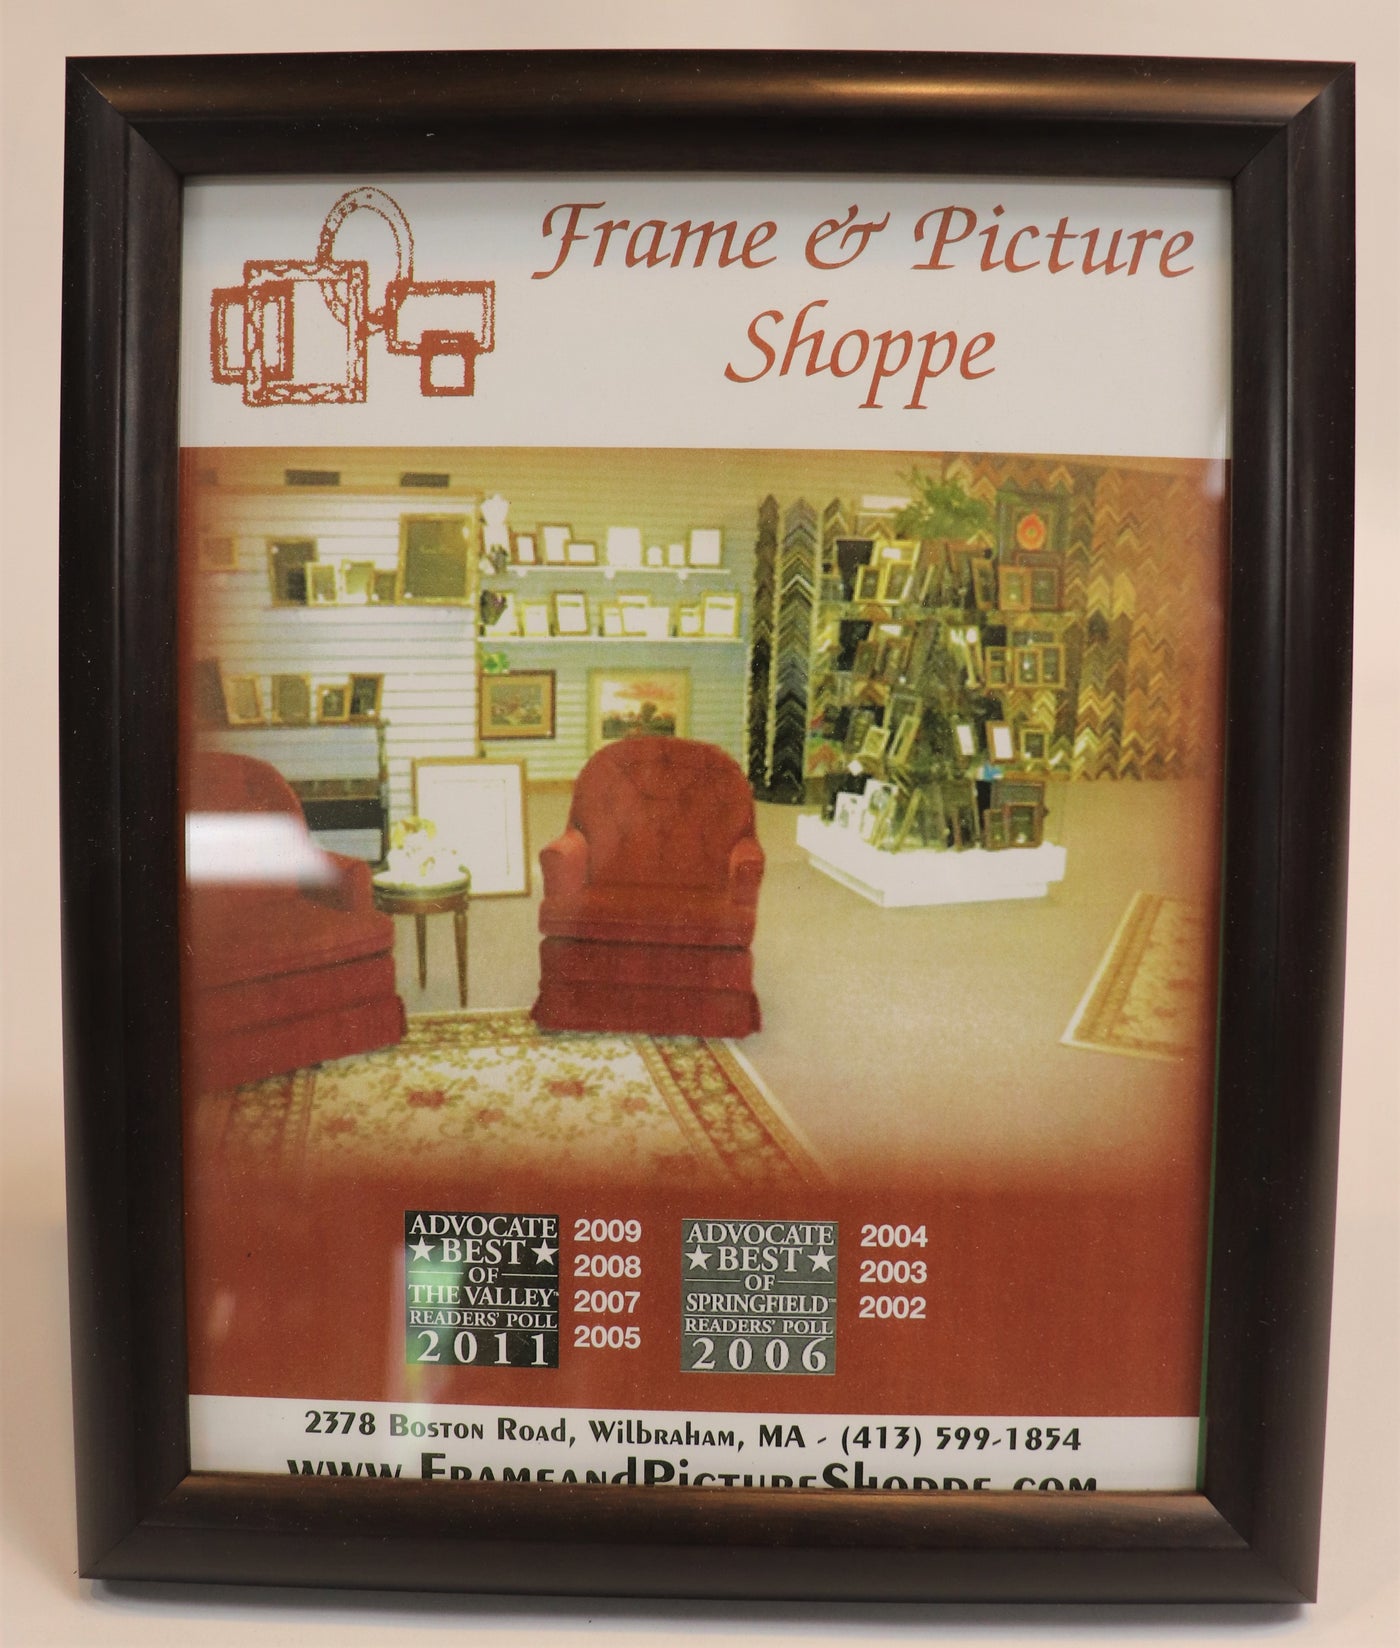 8" x 10" Wood Photo frame